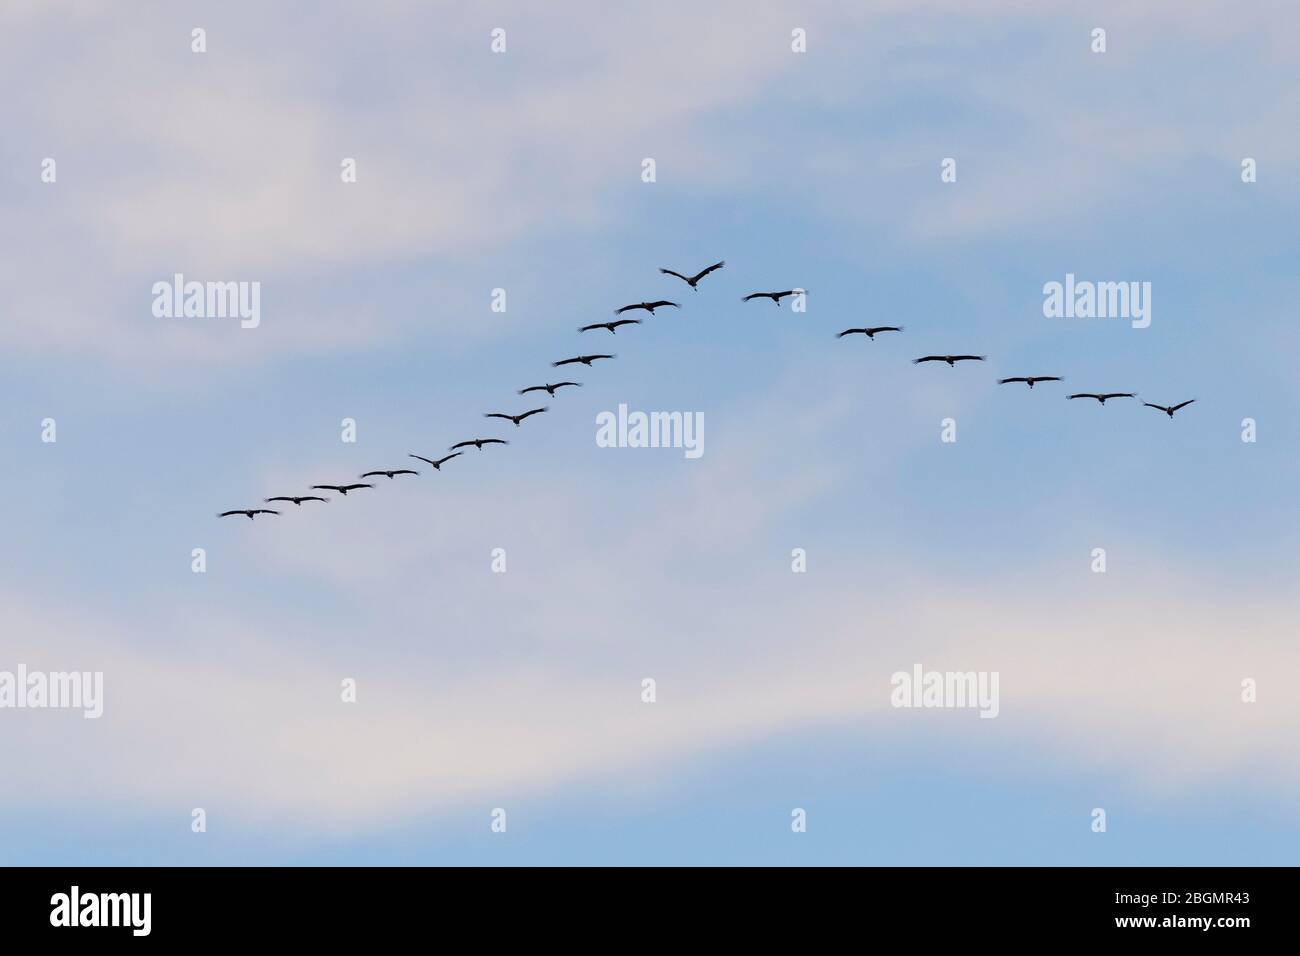 Grues communes (Grus griss), troupeau d'oiseaux volant en formation, Kinnbackenhagen/Bisdorf, Mecklembourg-Poméranie-Occidentale, Allemagne Banque D'Images